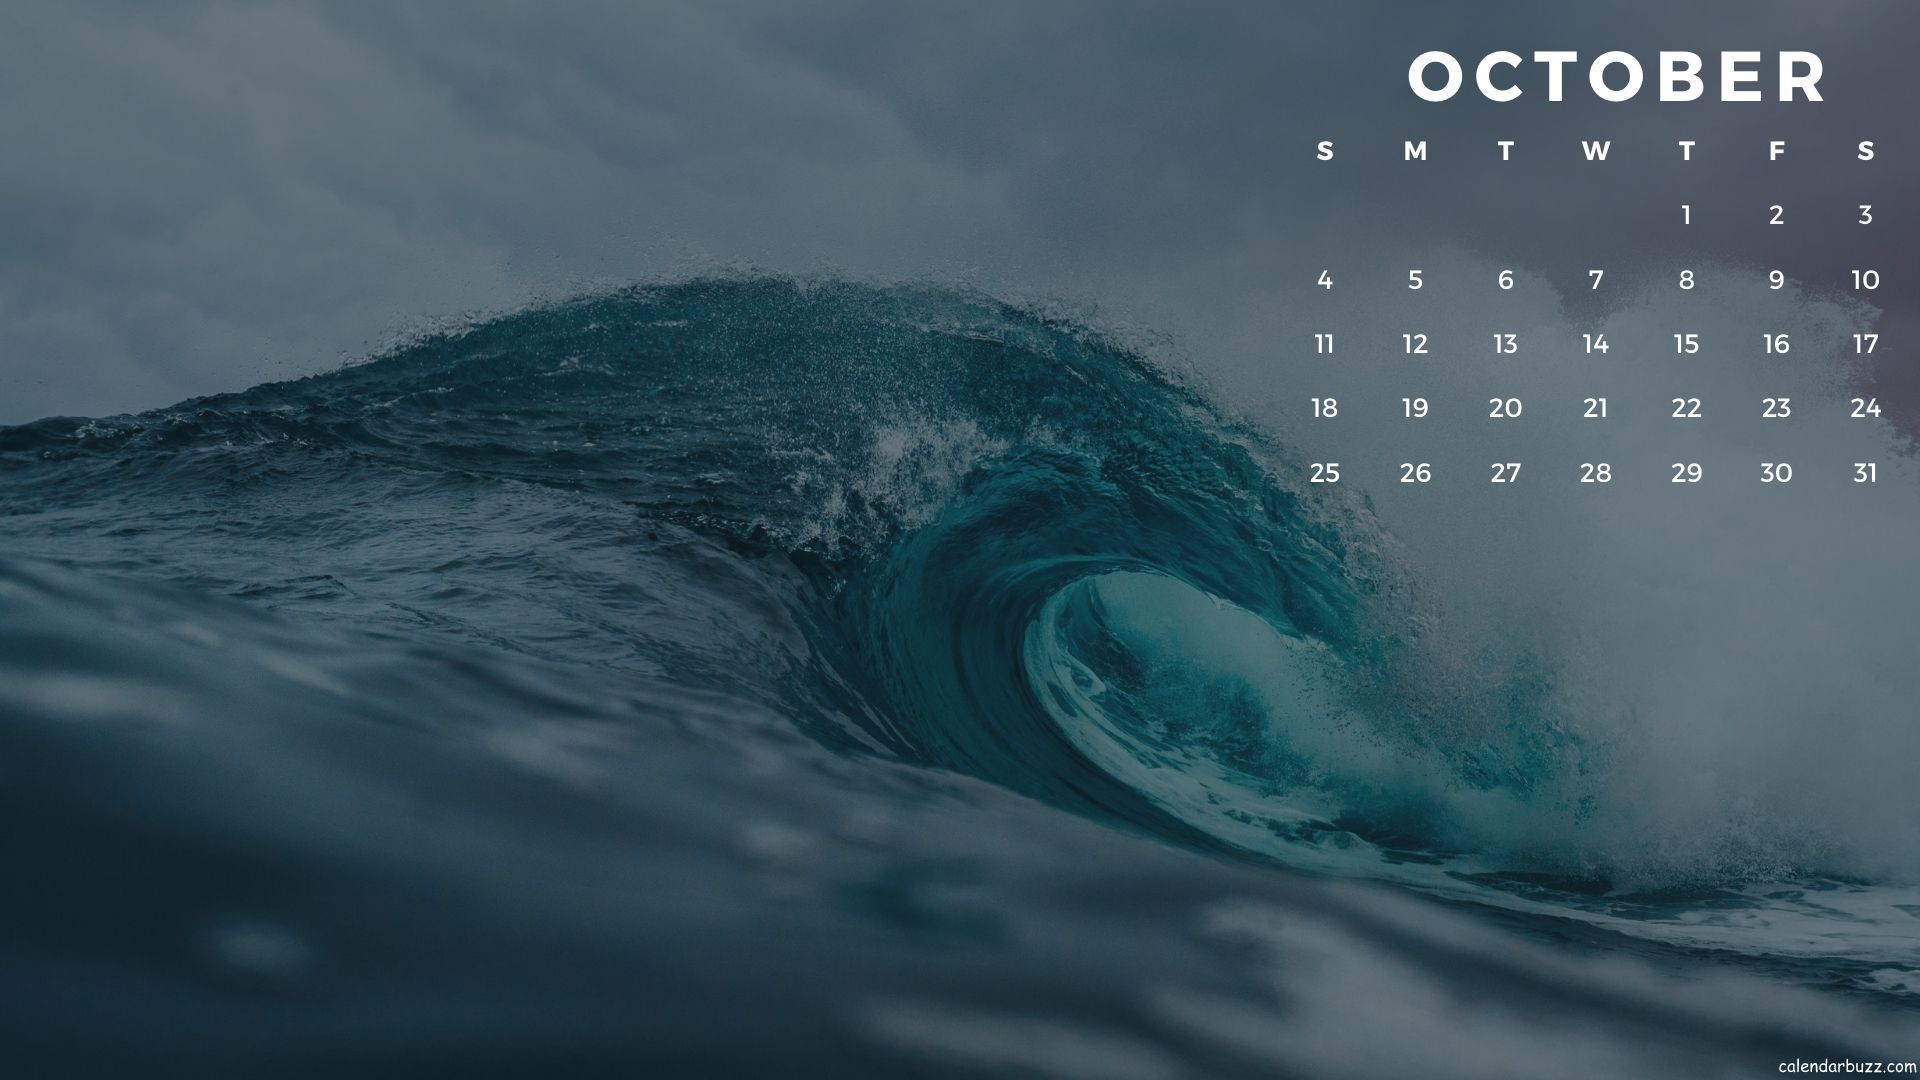 October Desktop Calendar Wallpaper Calendarbuzz